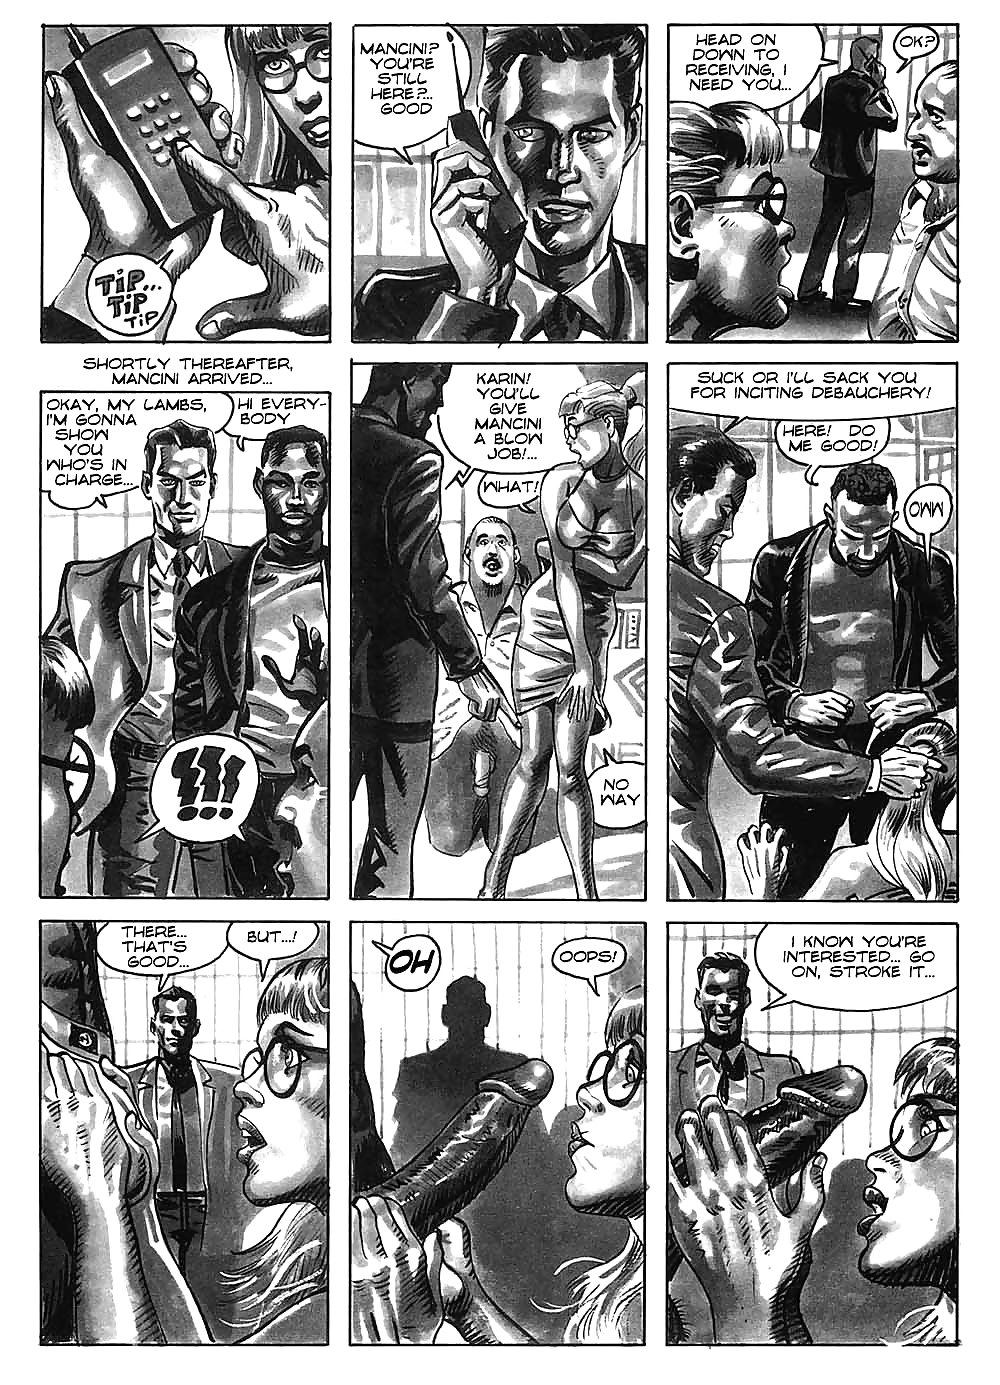 Hot comics 52 #19539760